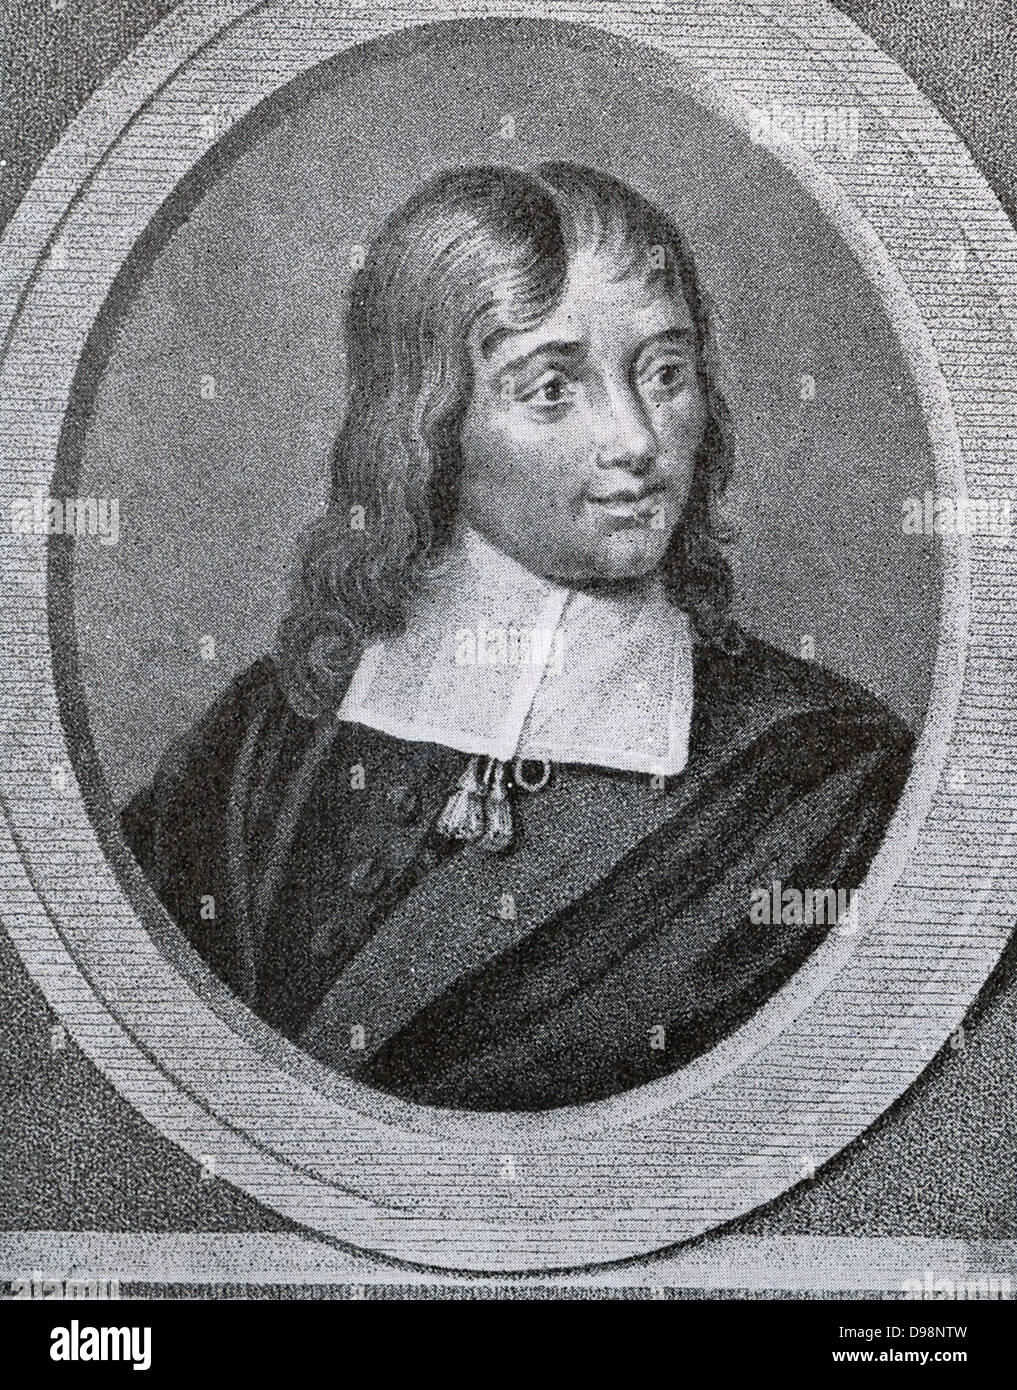 Gaspar Fagel (25 janvier 1634, La Haye, 15 décembre 1688) est né dans une famille patricienne. Il était un homme d'État néerlandais, écrivain et quasi-diplomate qui est l'auteur de la correspondance de et pour le compte de Guillaume III, Prince d'Orange au cours de la révolution anglaise de 1688. Banque D'Images